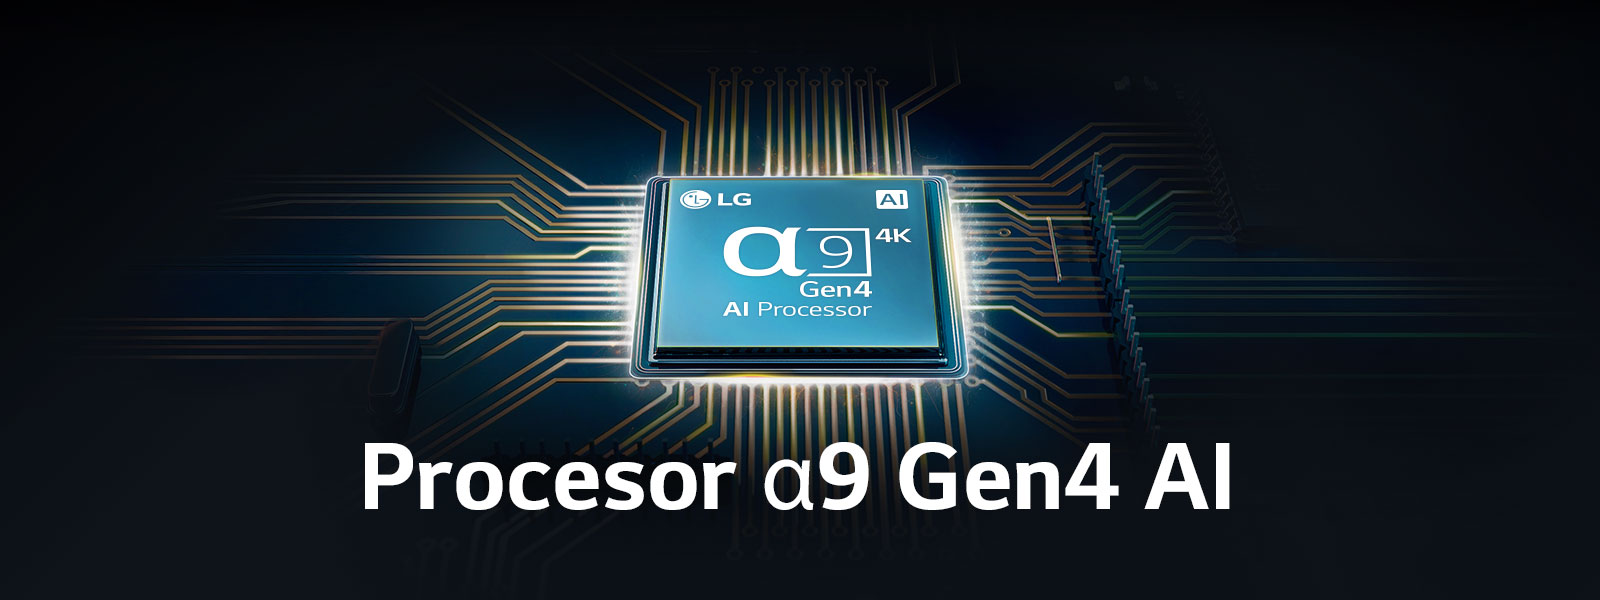 Procesor a9 Gen4 AI na środku układu elektrycznego.